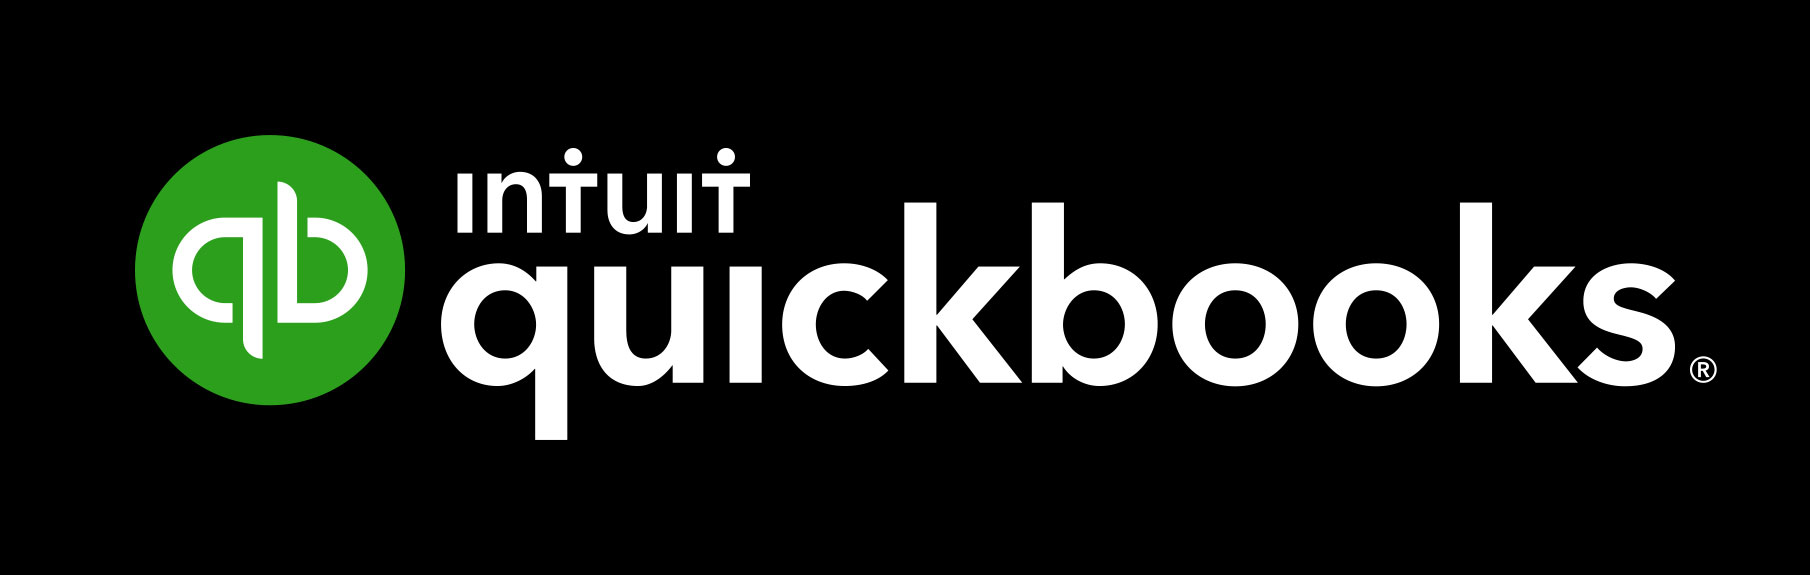 intruit quickbooks logo